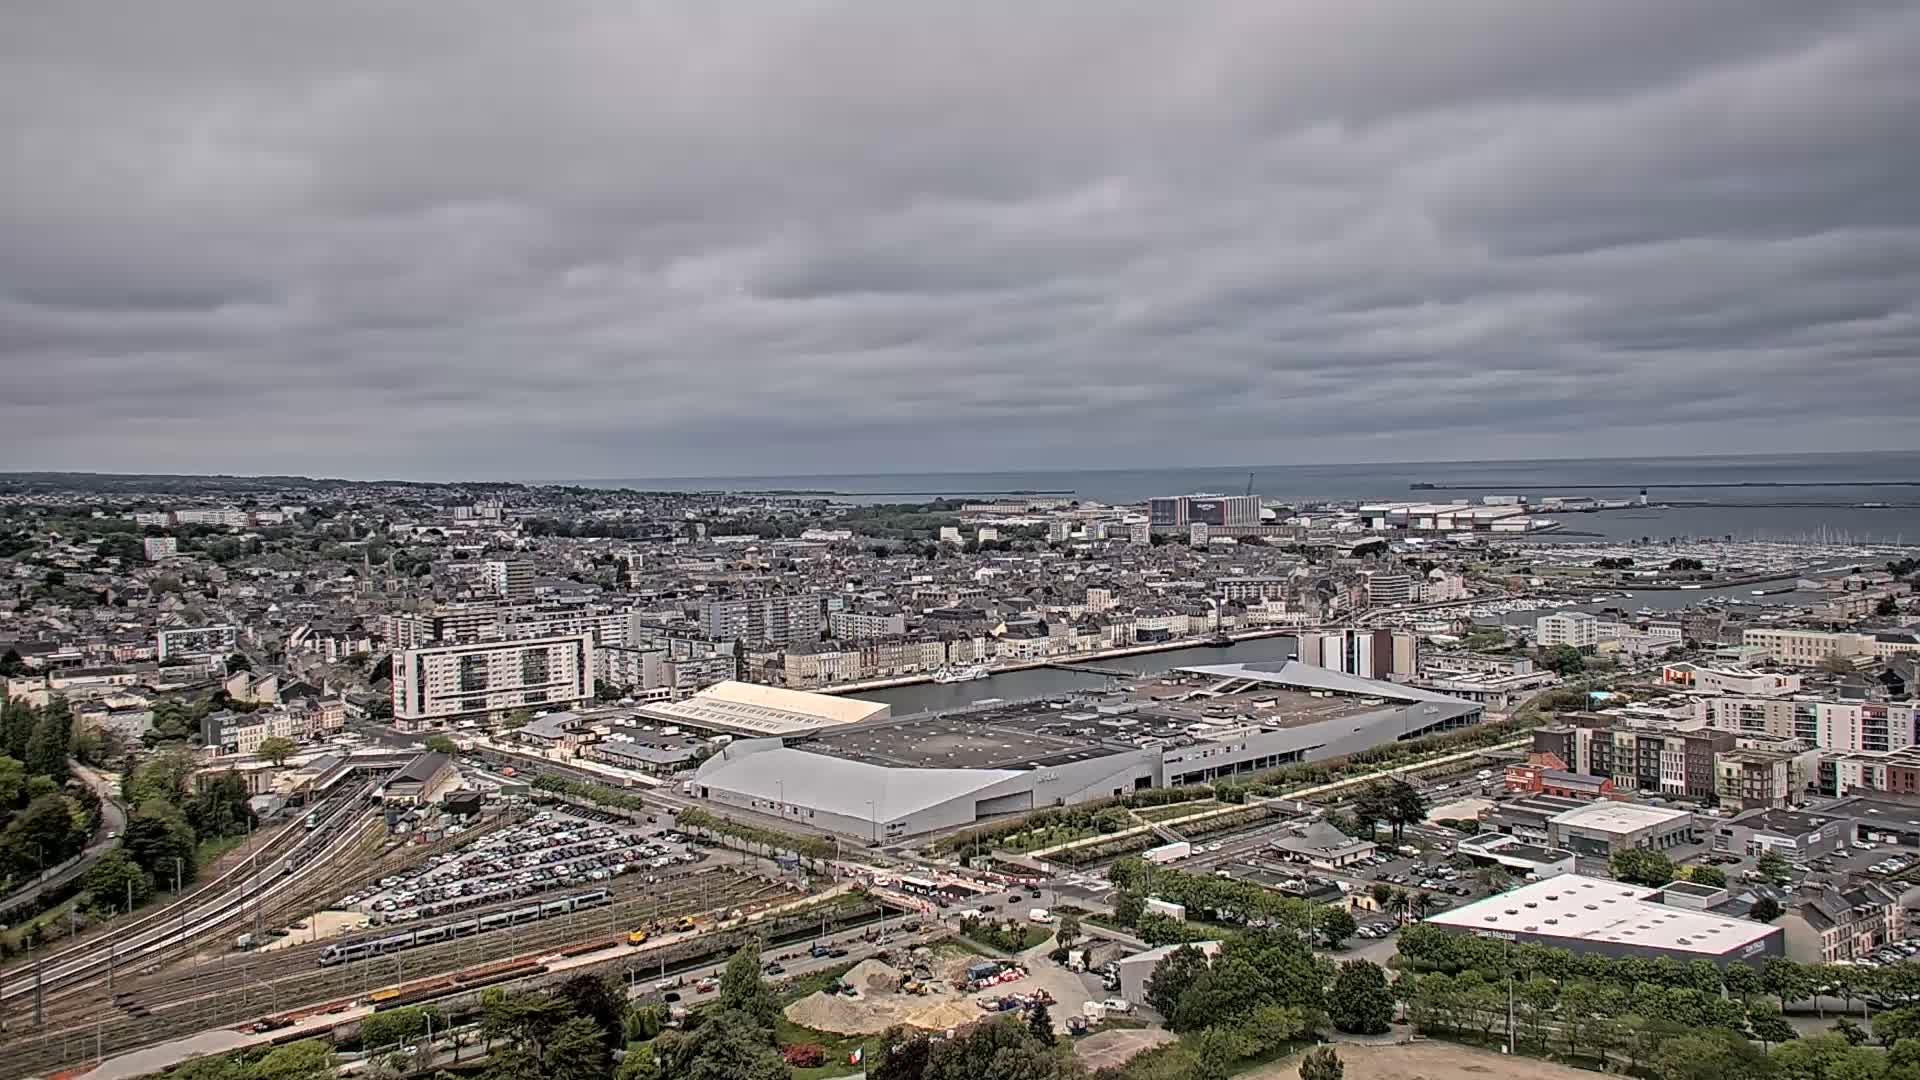 Cherbourg-Octeville Fre. 14:33